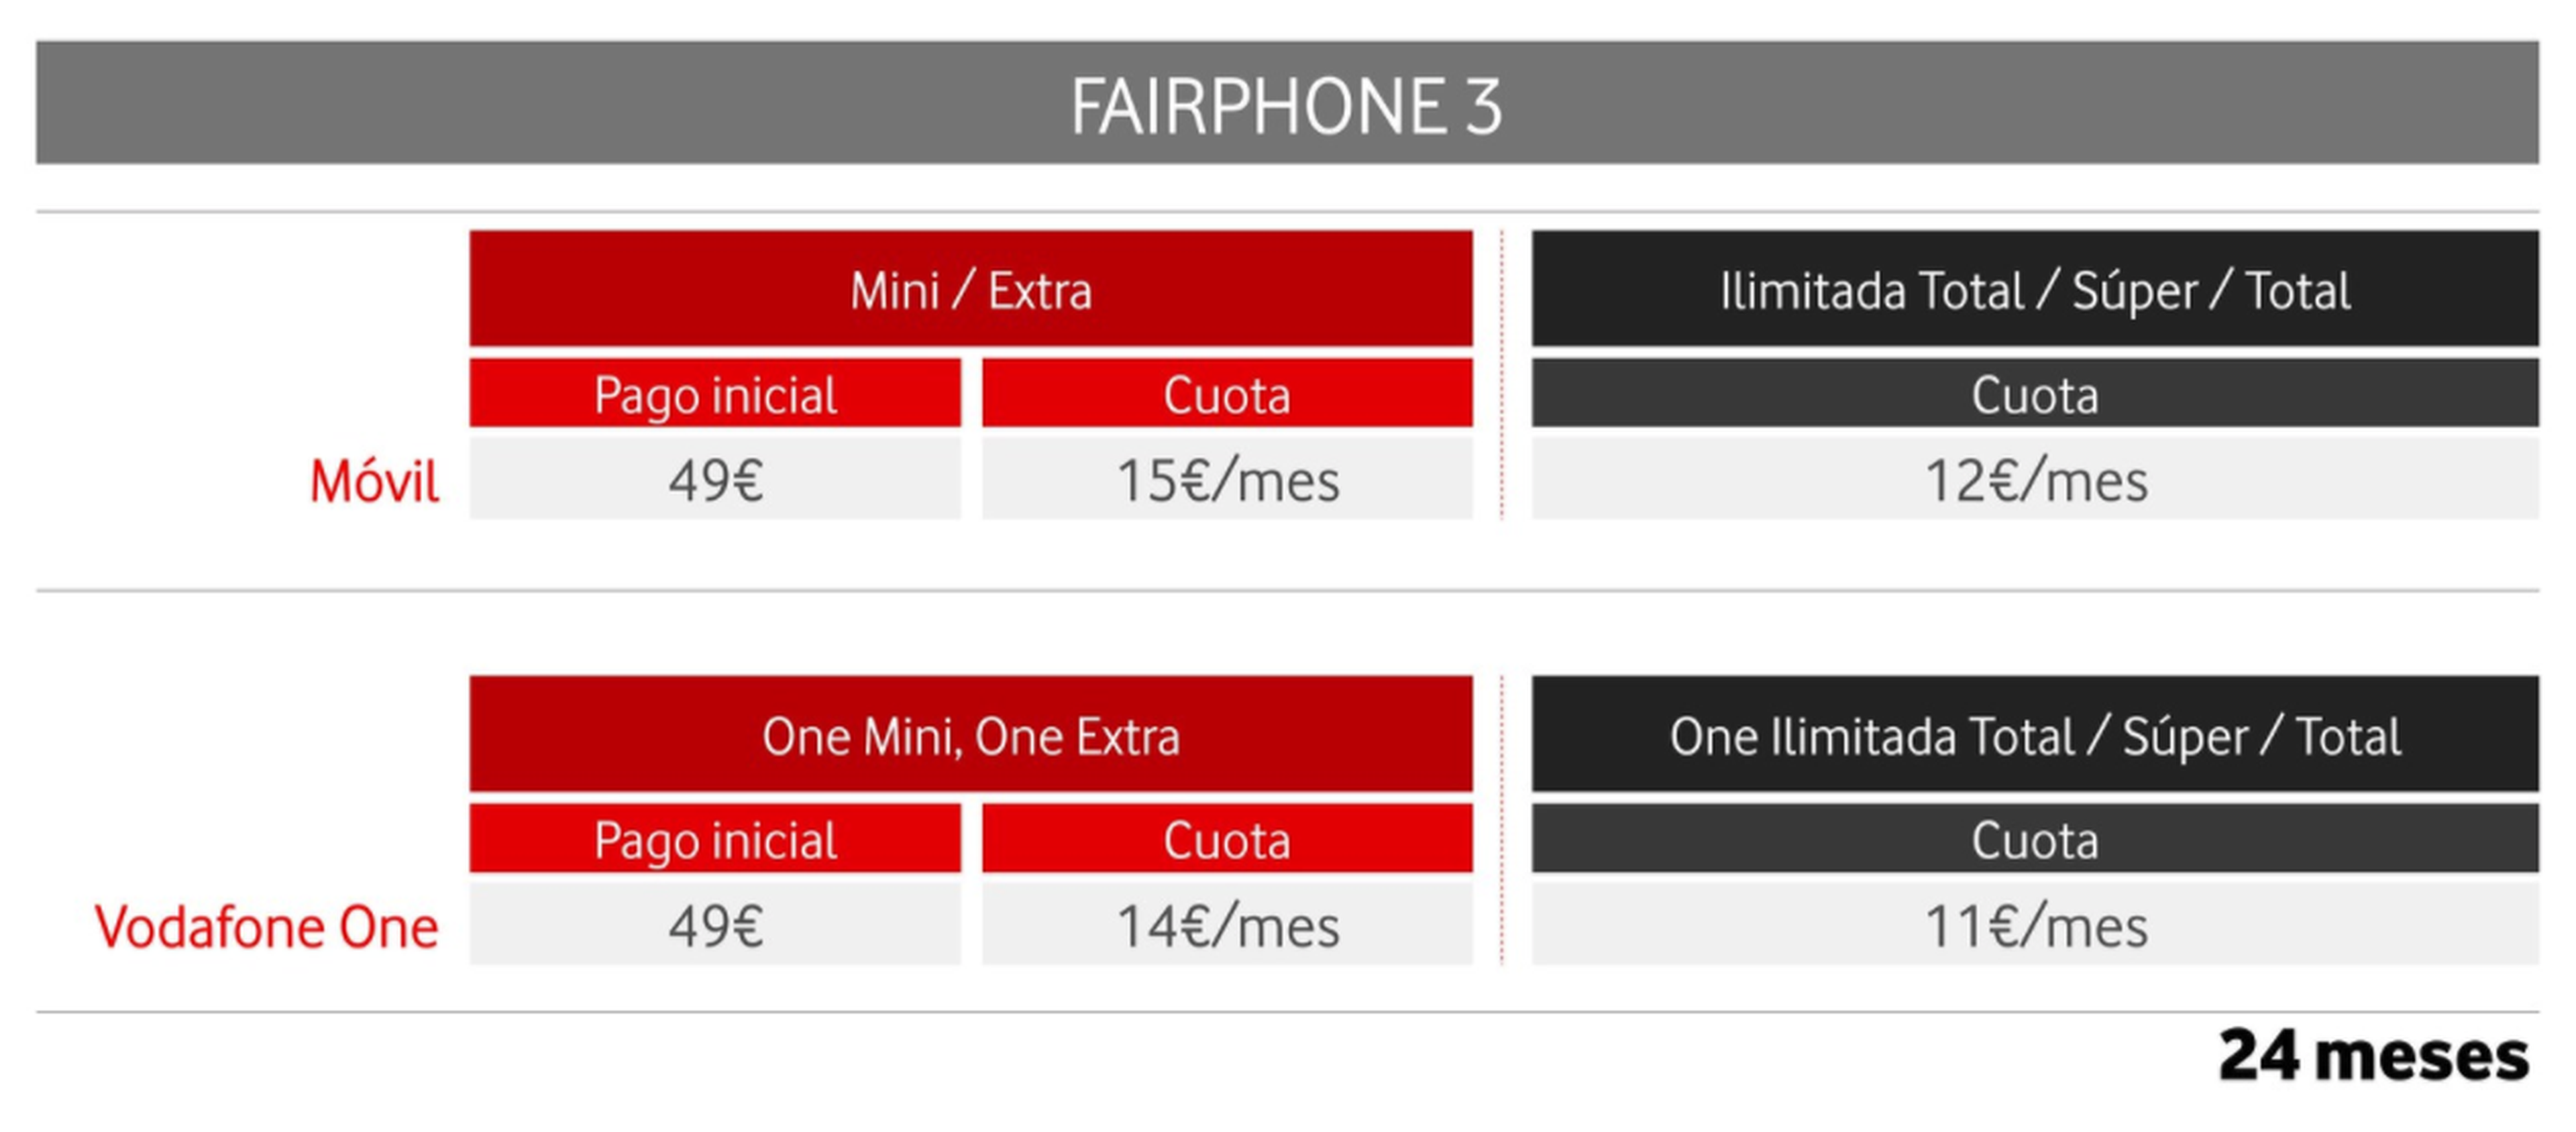 Tarifa Fairphone 3